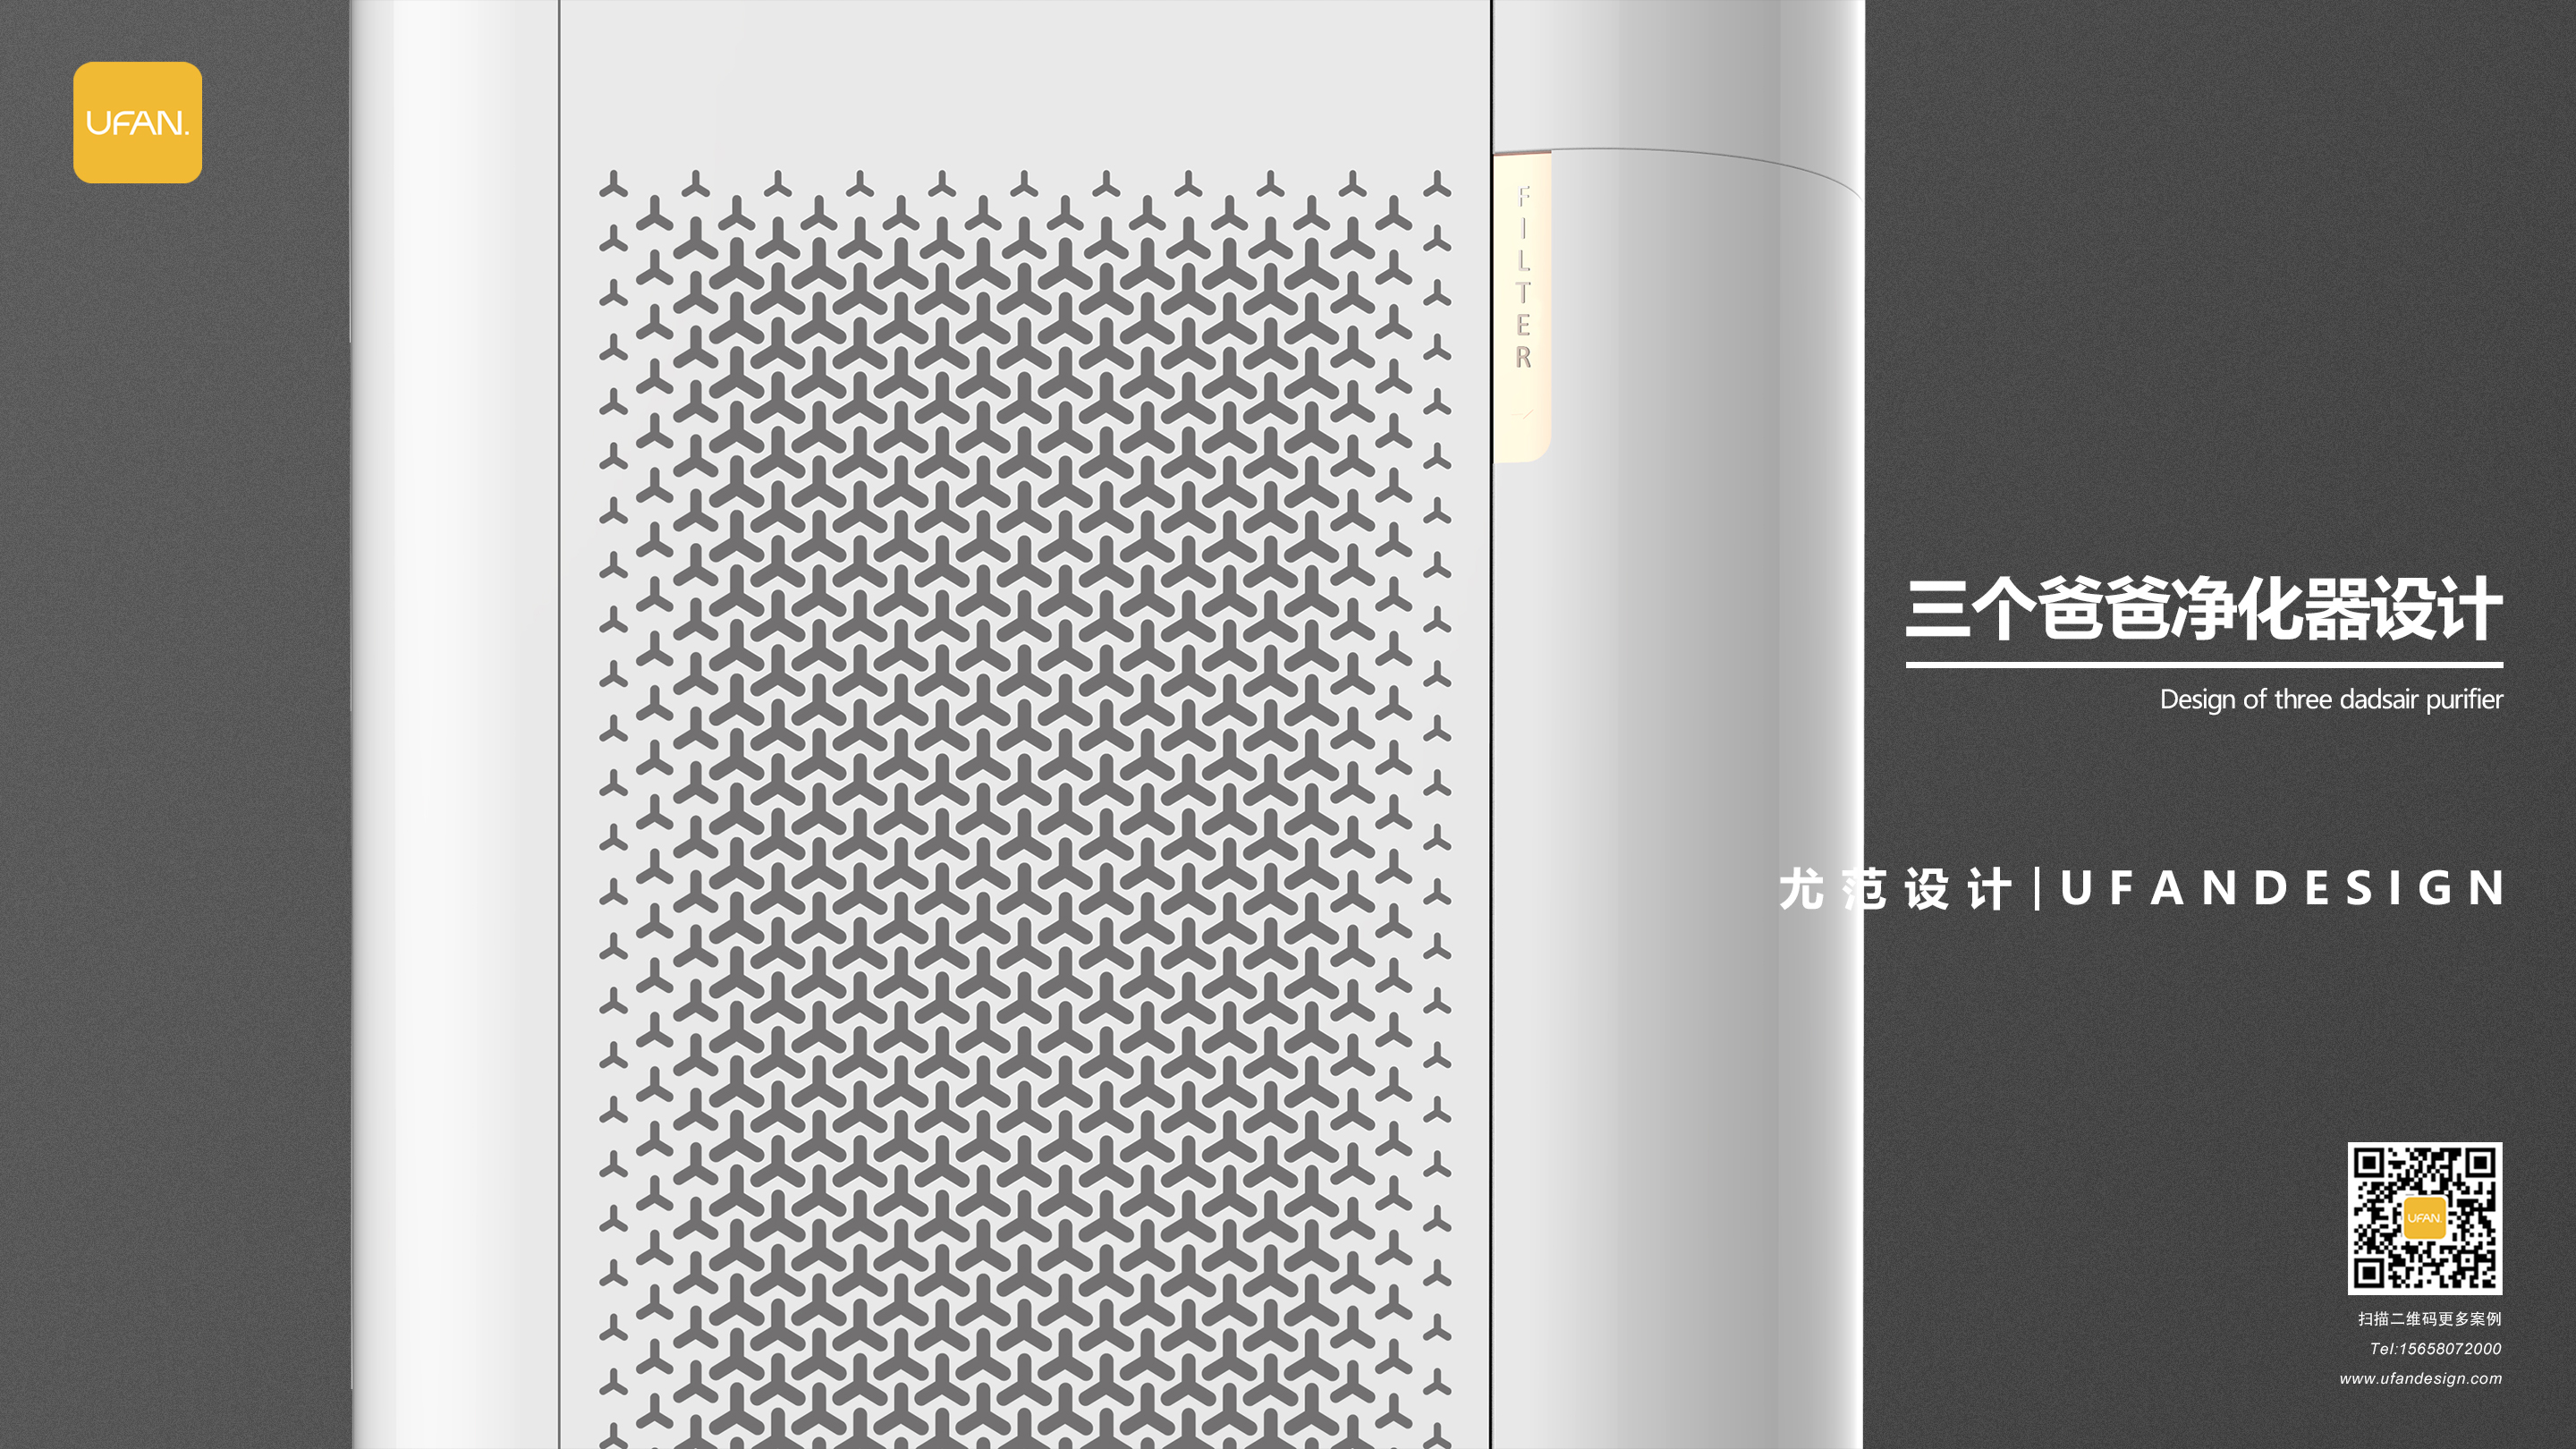 杭州尤范设计工业设计公司-净化器设计公司-净化器外观设计03.jpg